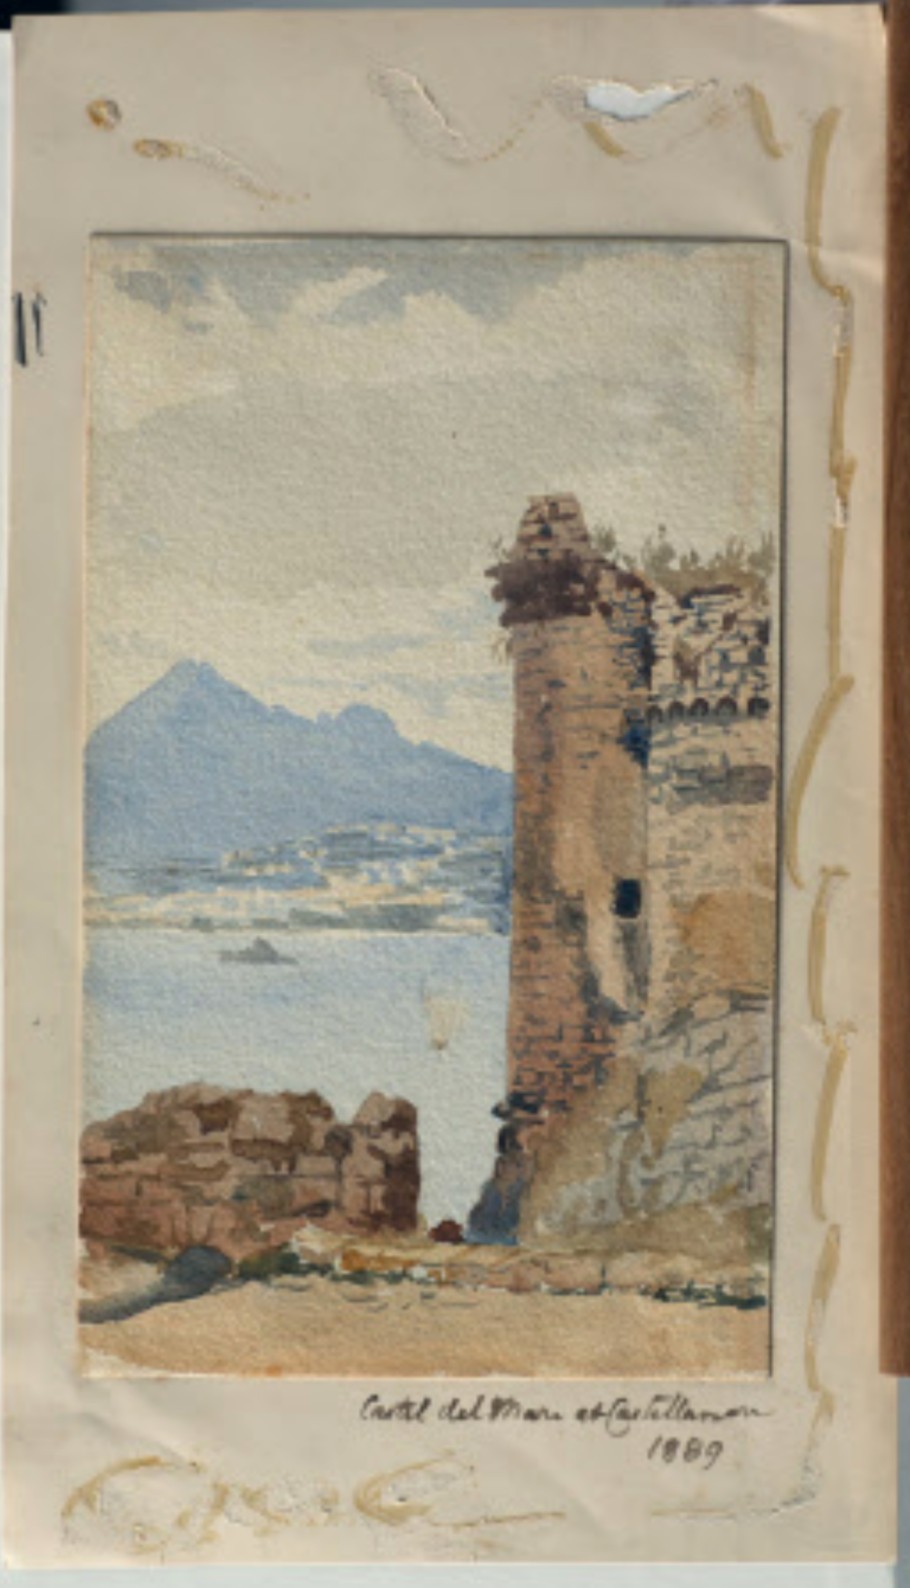 Emily Jane Wodhouse, Acquerello su carta, Il Castello, 1889